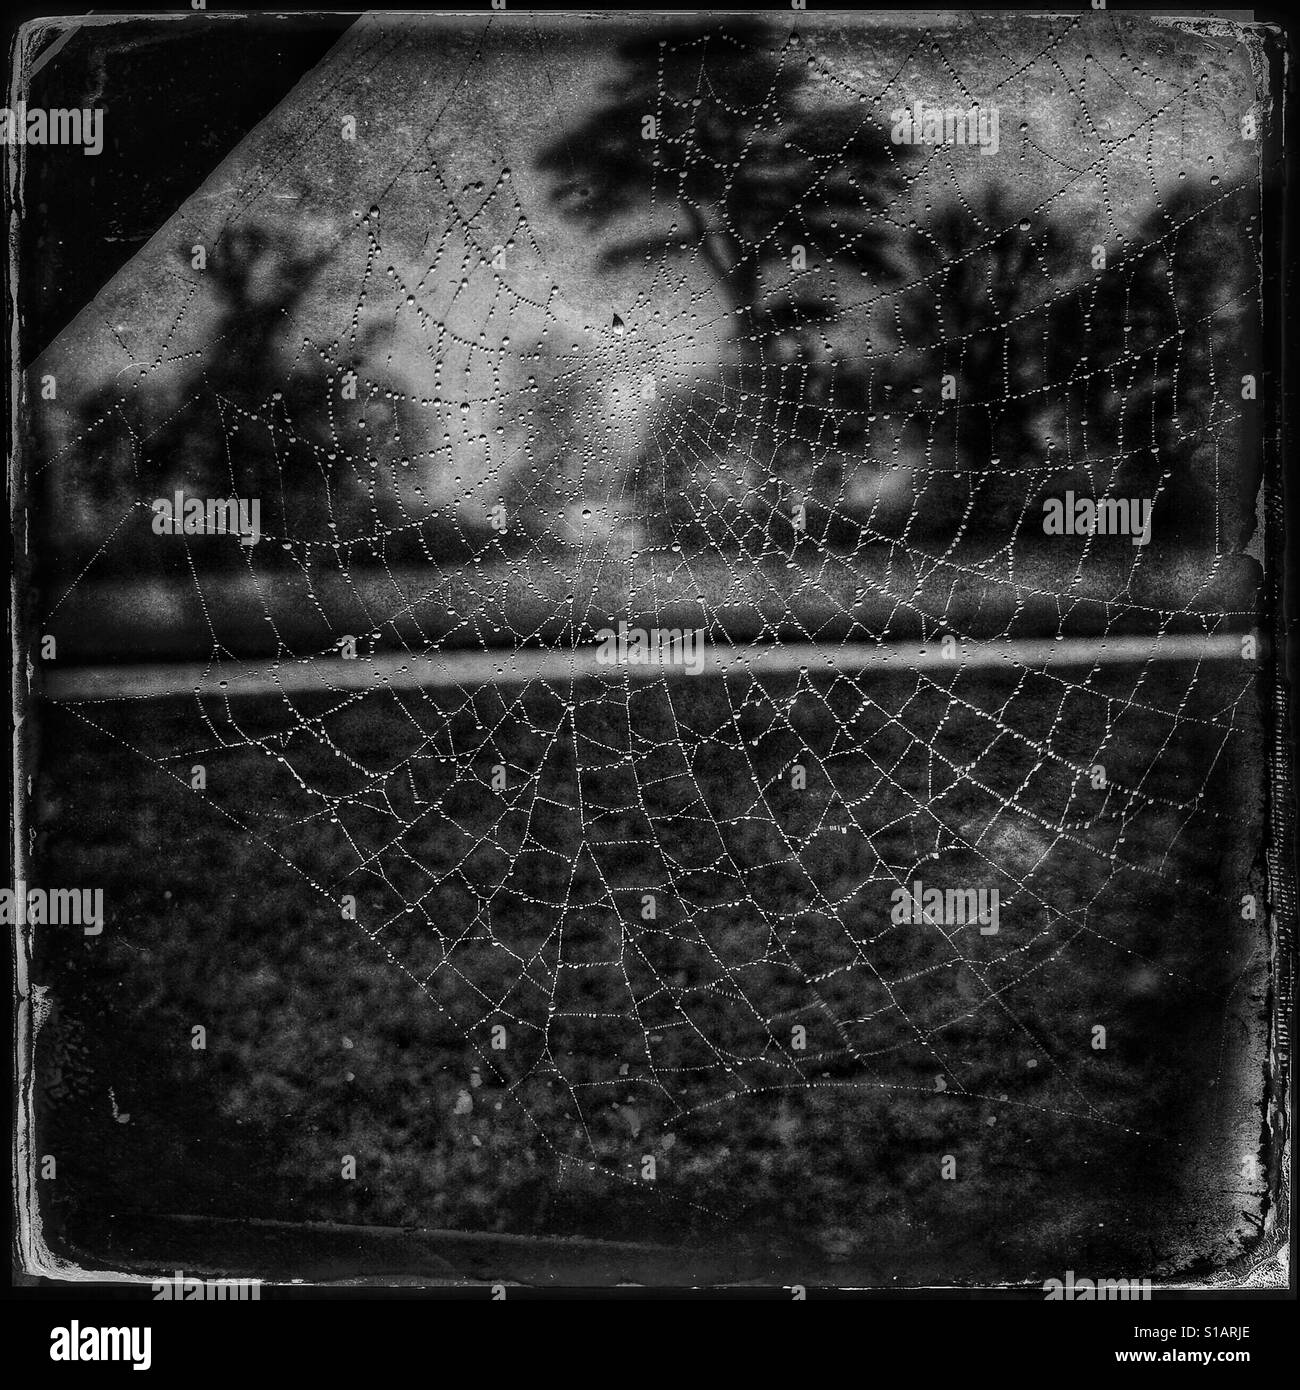 Photo en noir et blanc d'une scène sombre et effrayant avec une toile d'araignée avec des gouttelettes de pluie de joyaux, avec de mystérieux à la recherche d'arbres en arrière-plan. Banque D'Images